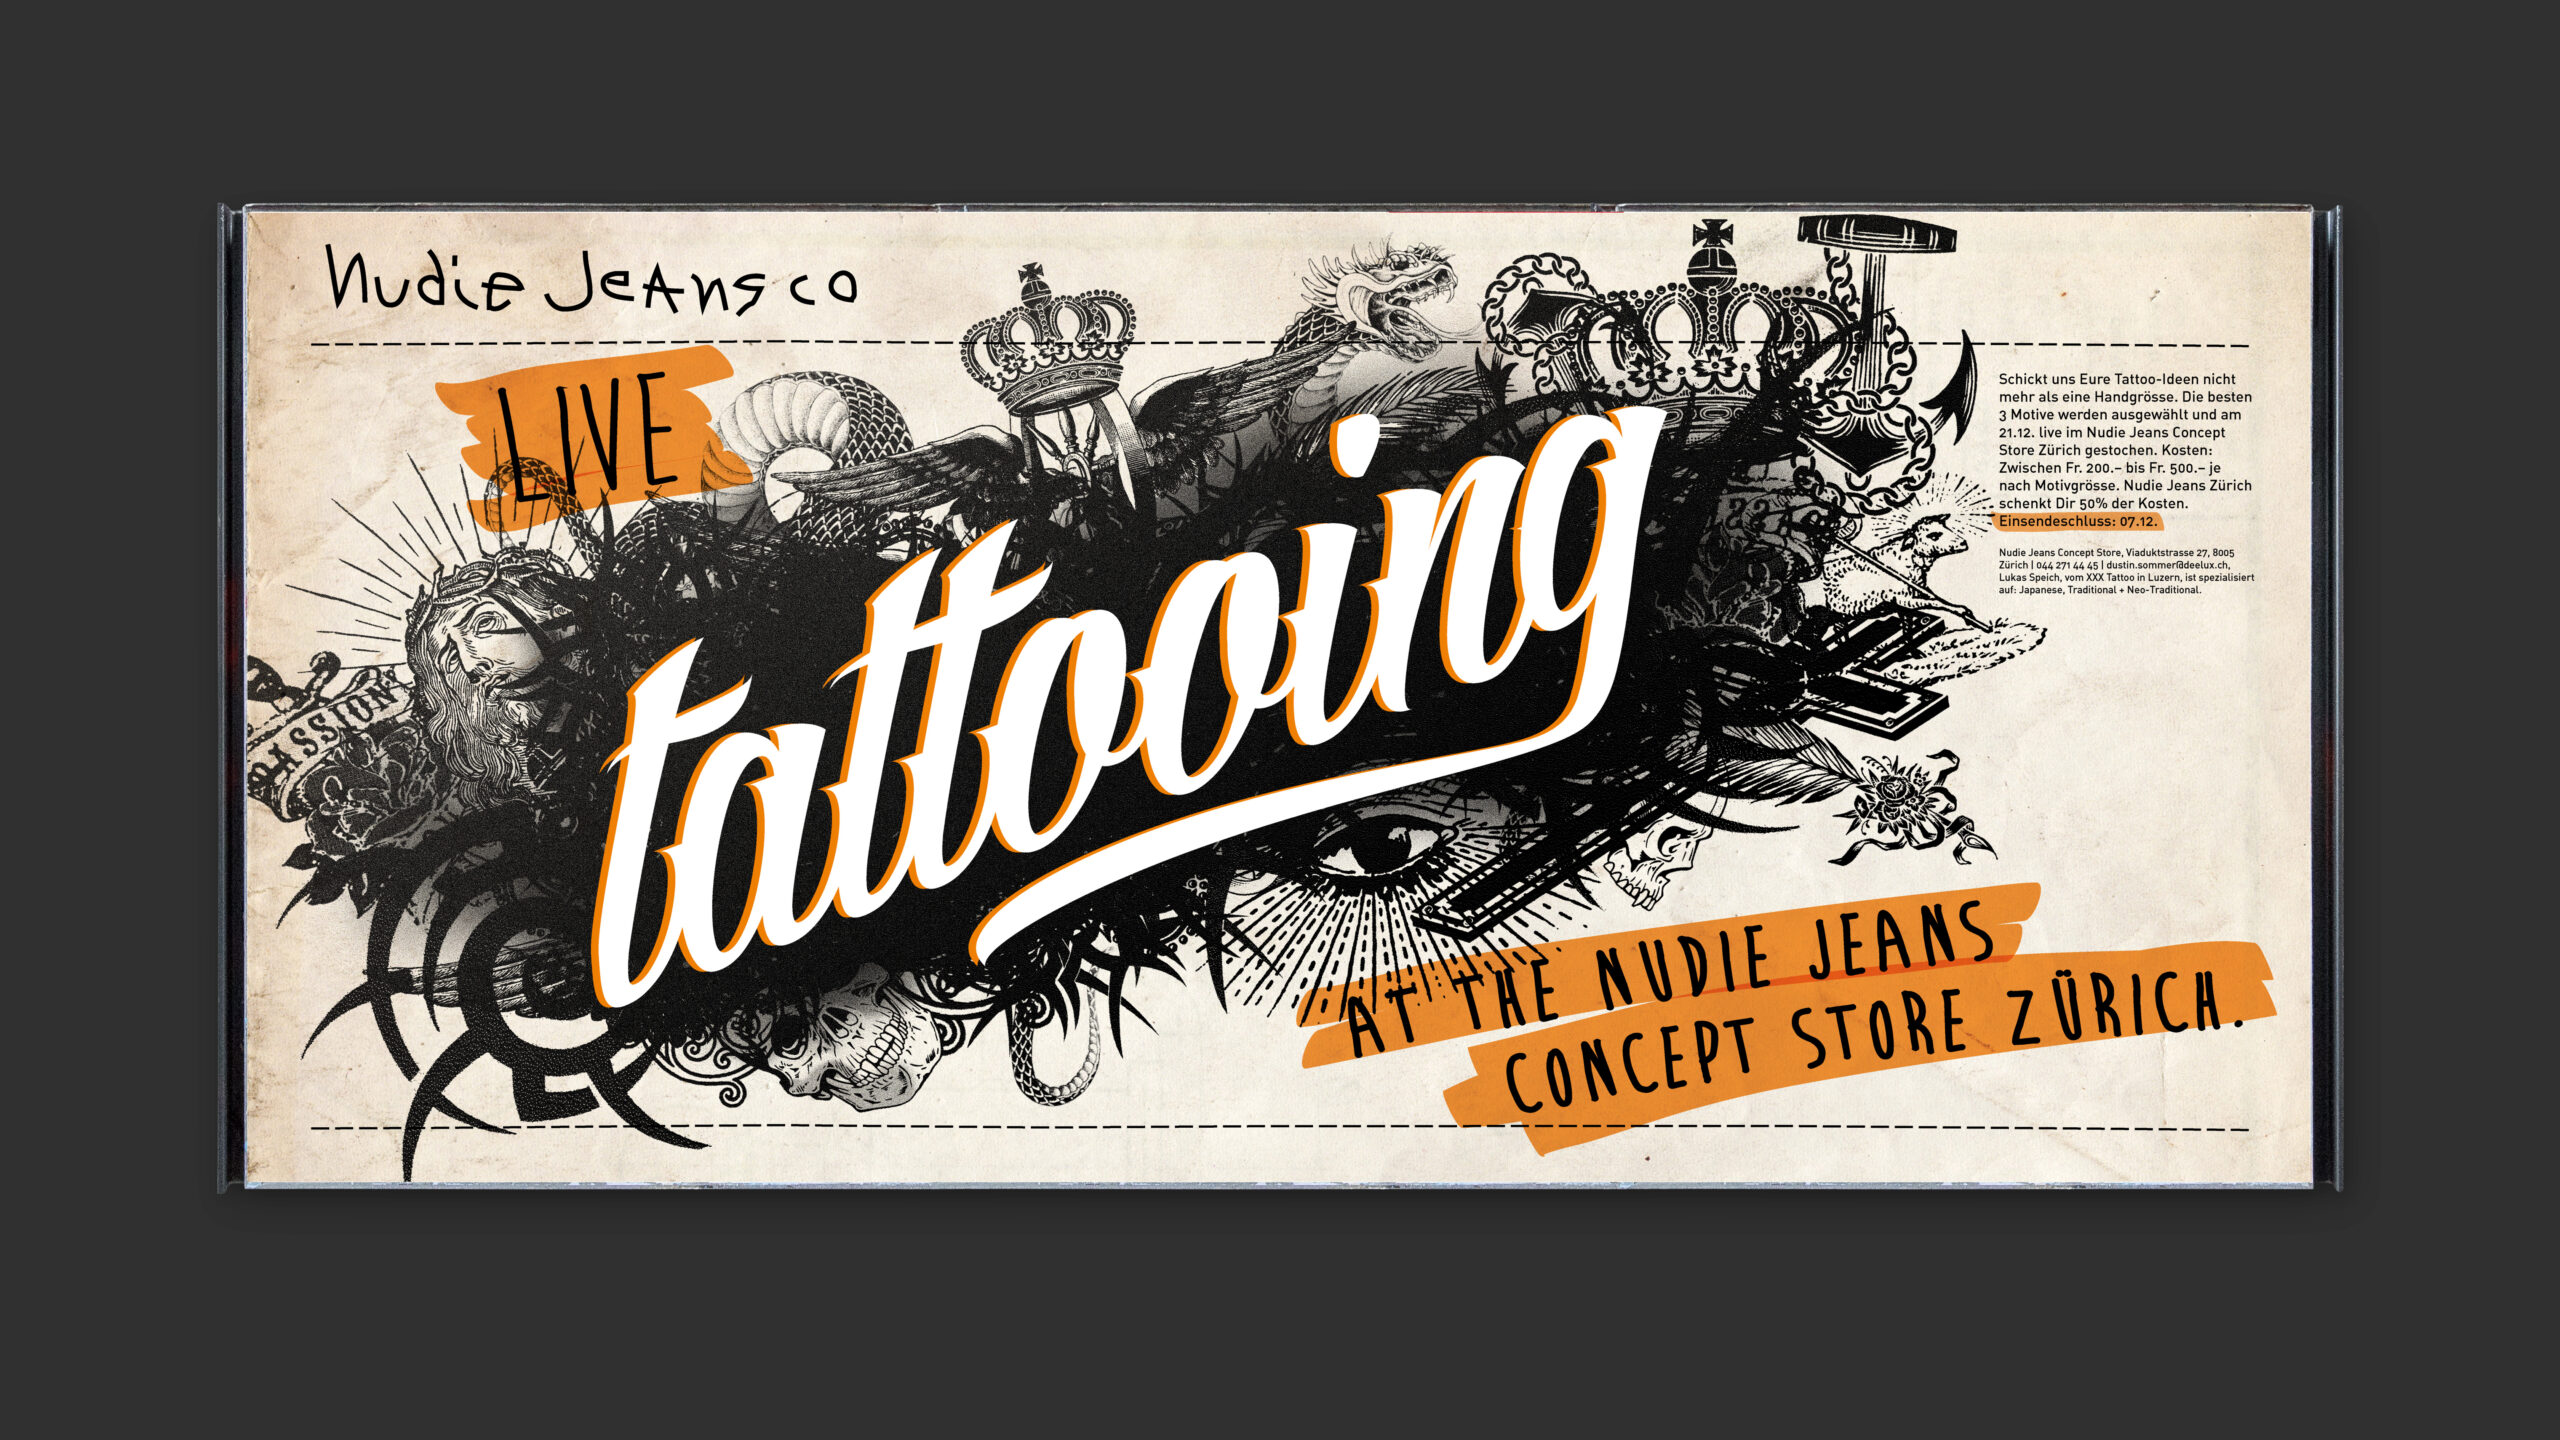 Plakat-Gestaltung für die Werbung des Events. Illustration und Schriftgestaltung greifen die Bildsprache und Formensprache typischer Tattoo-Motiven auf.